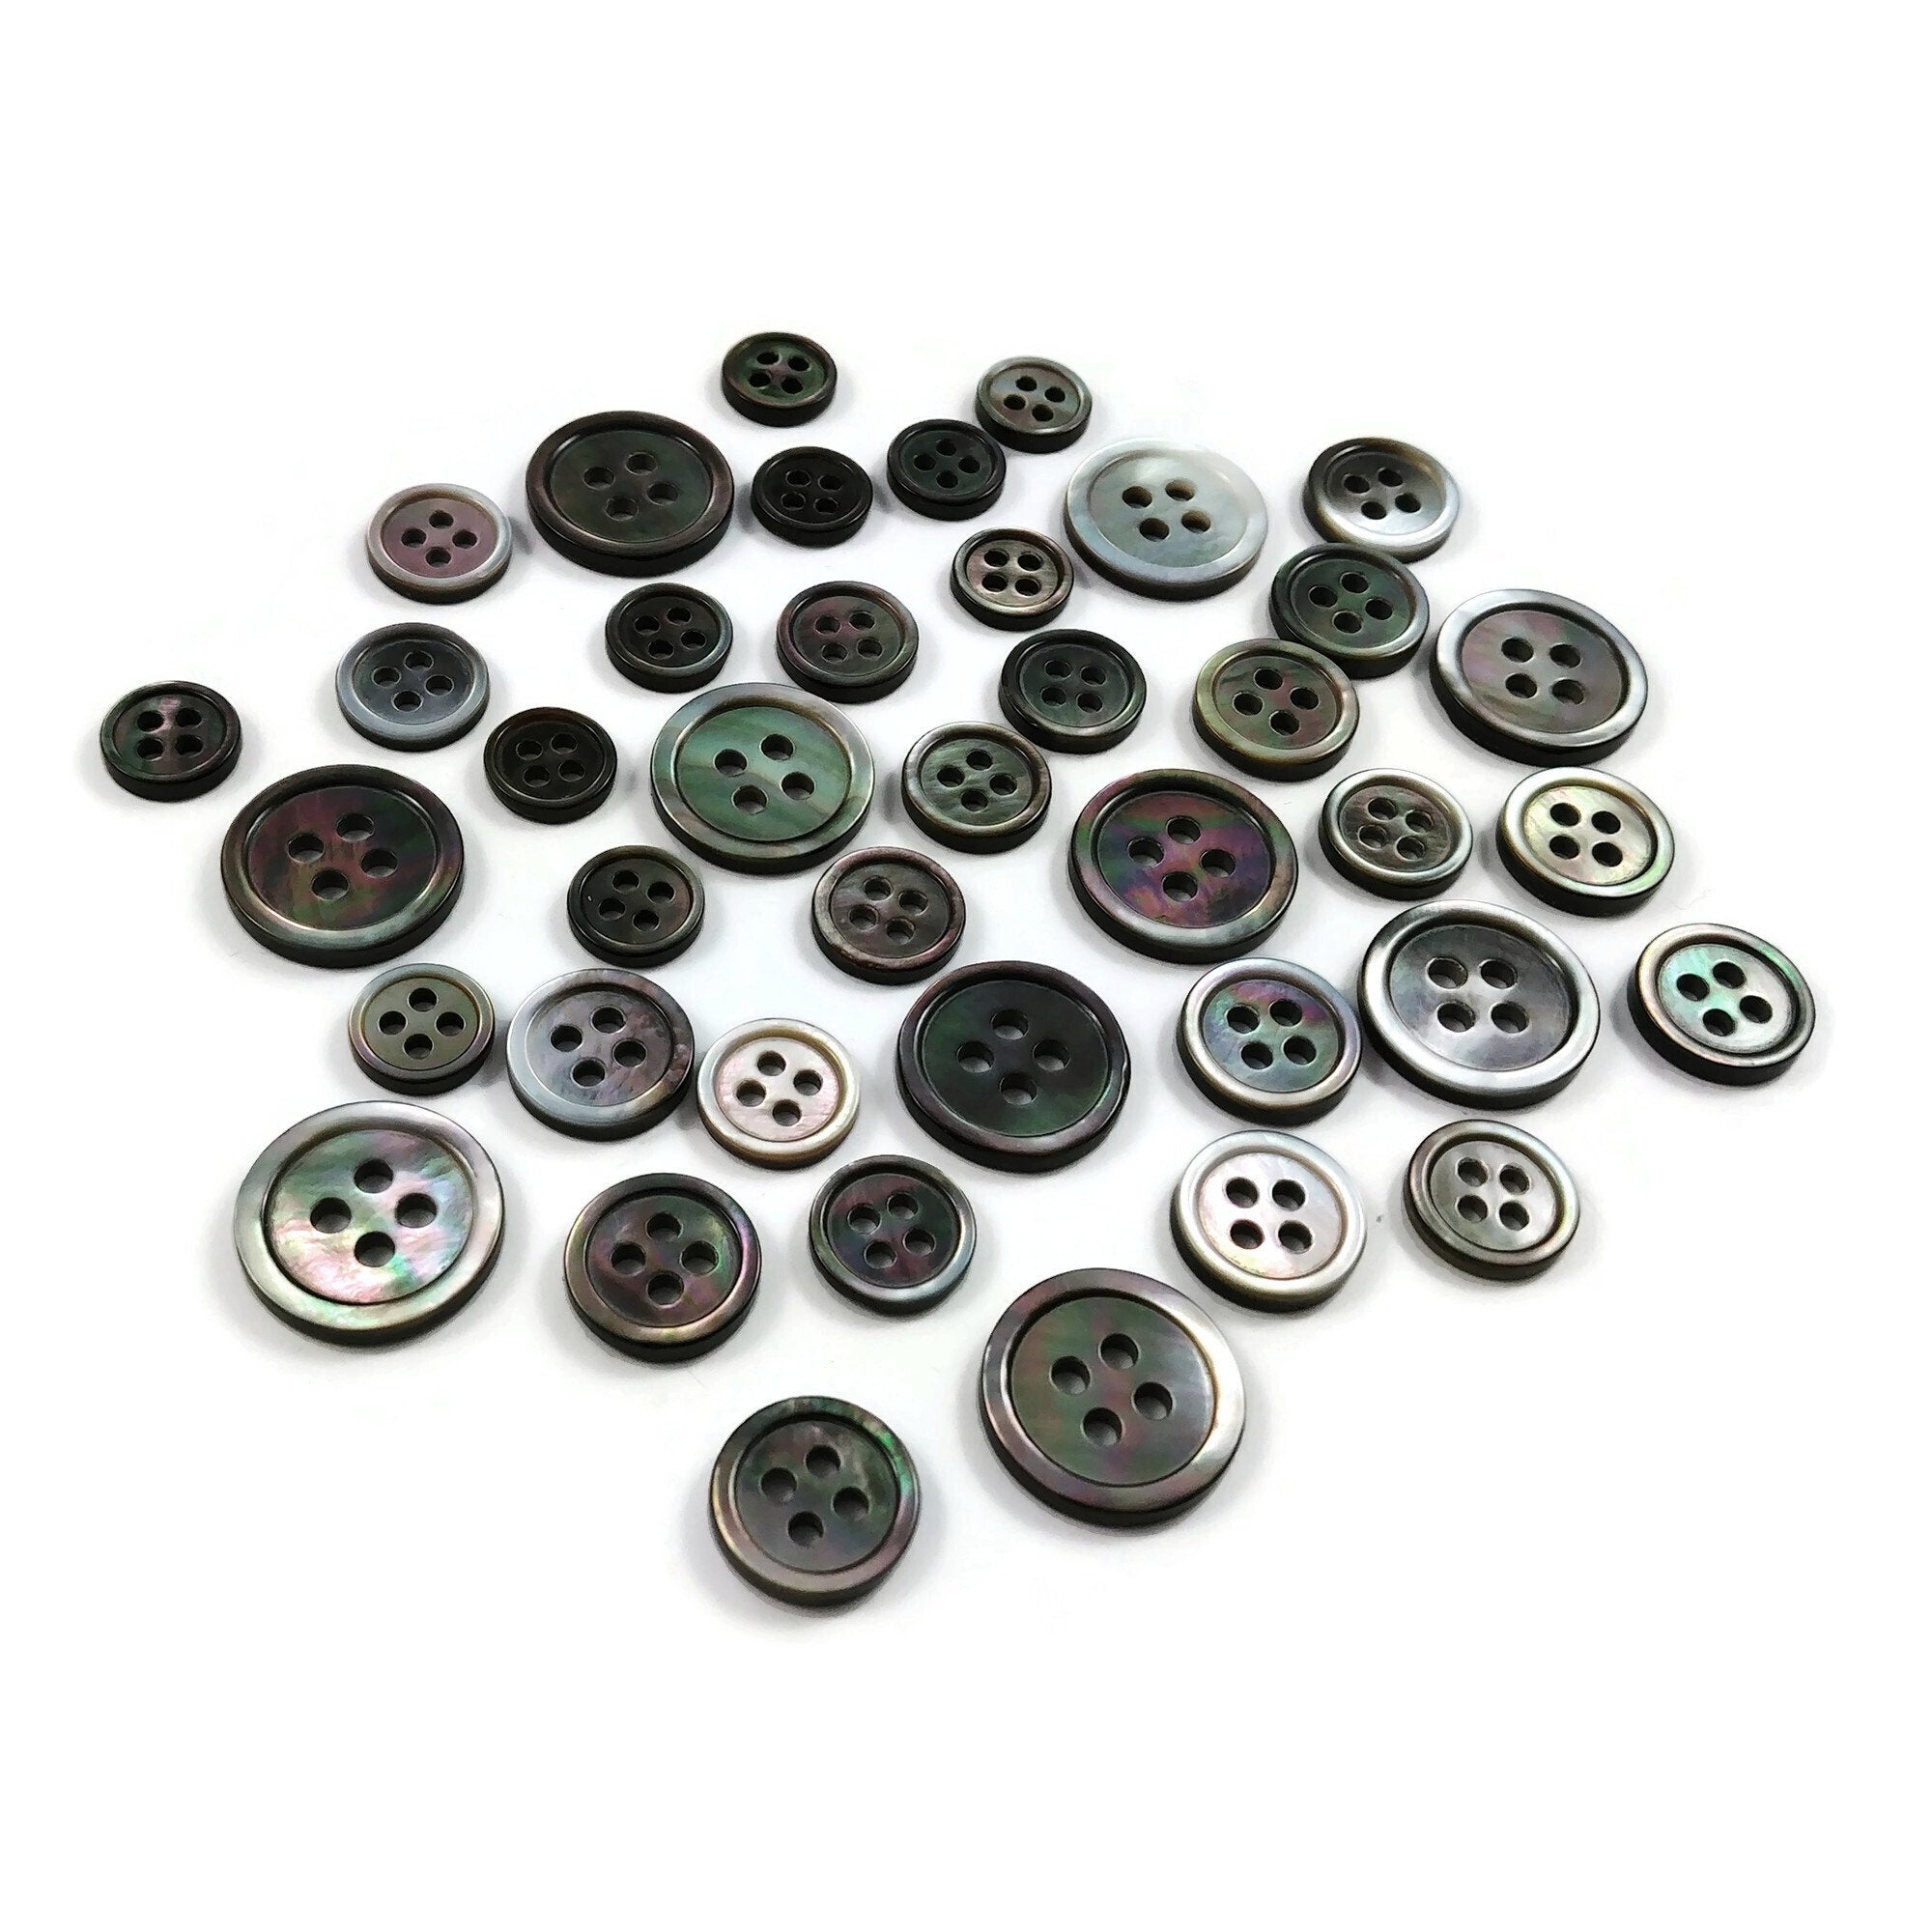 Black/gray mottled buttons